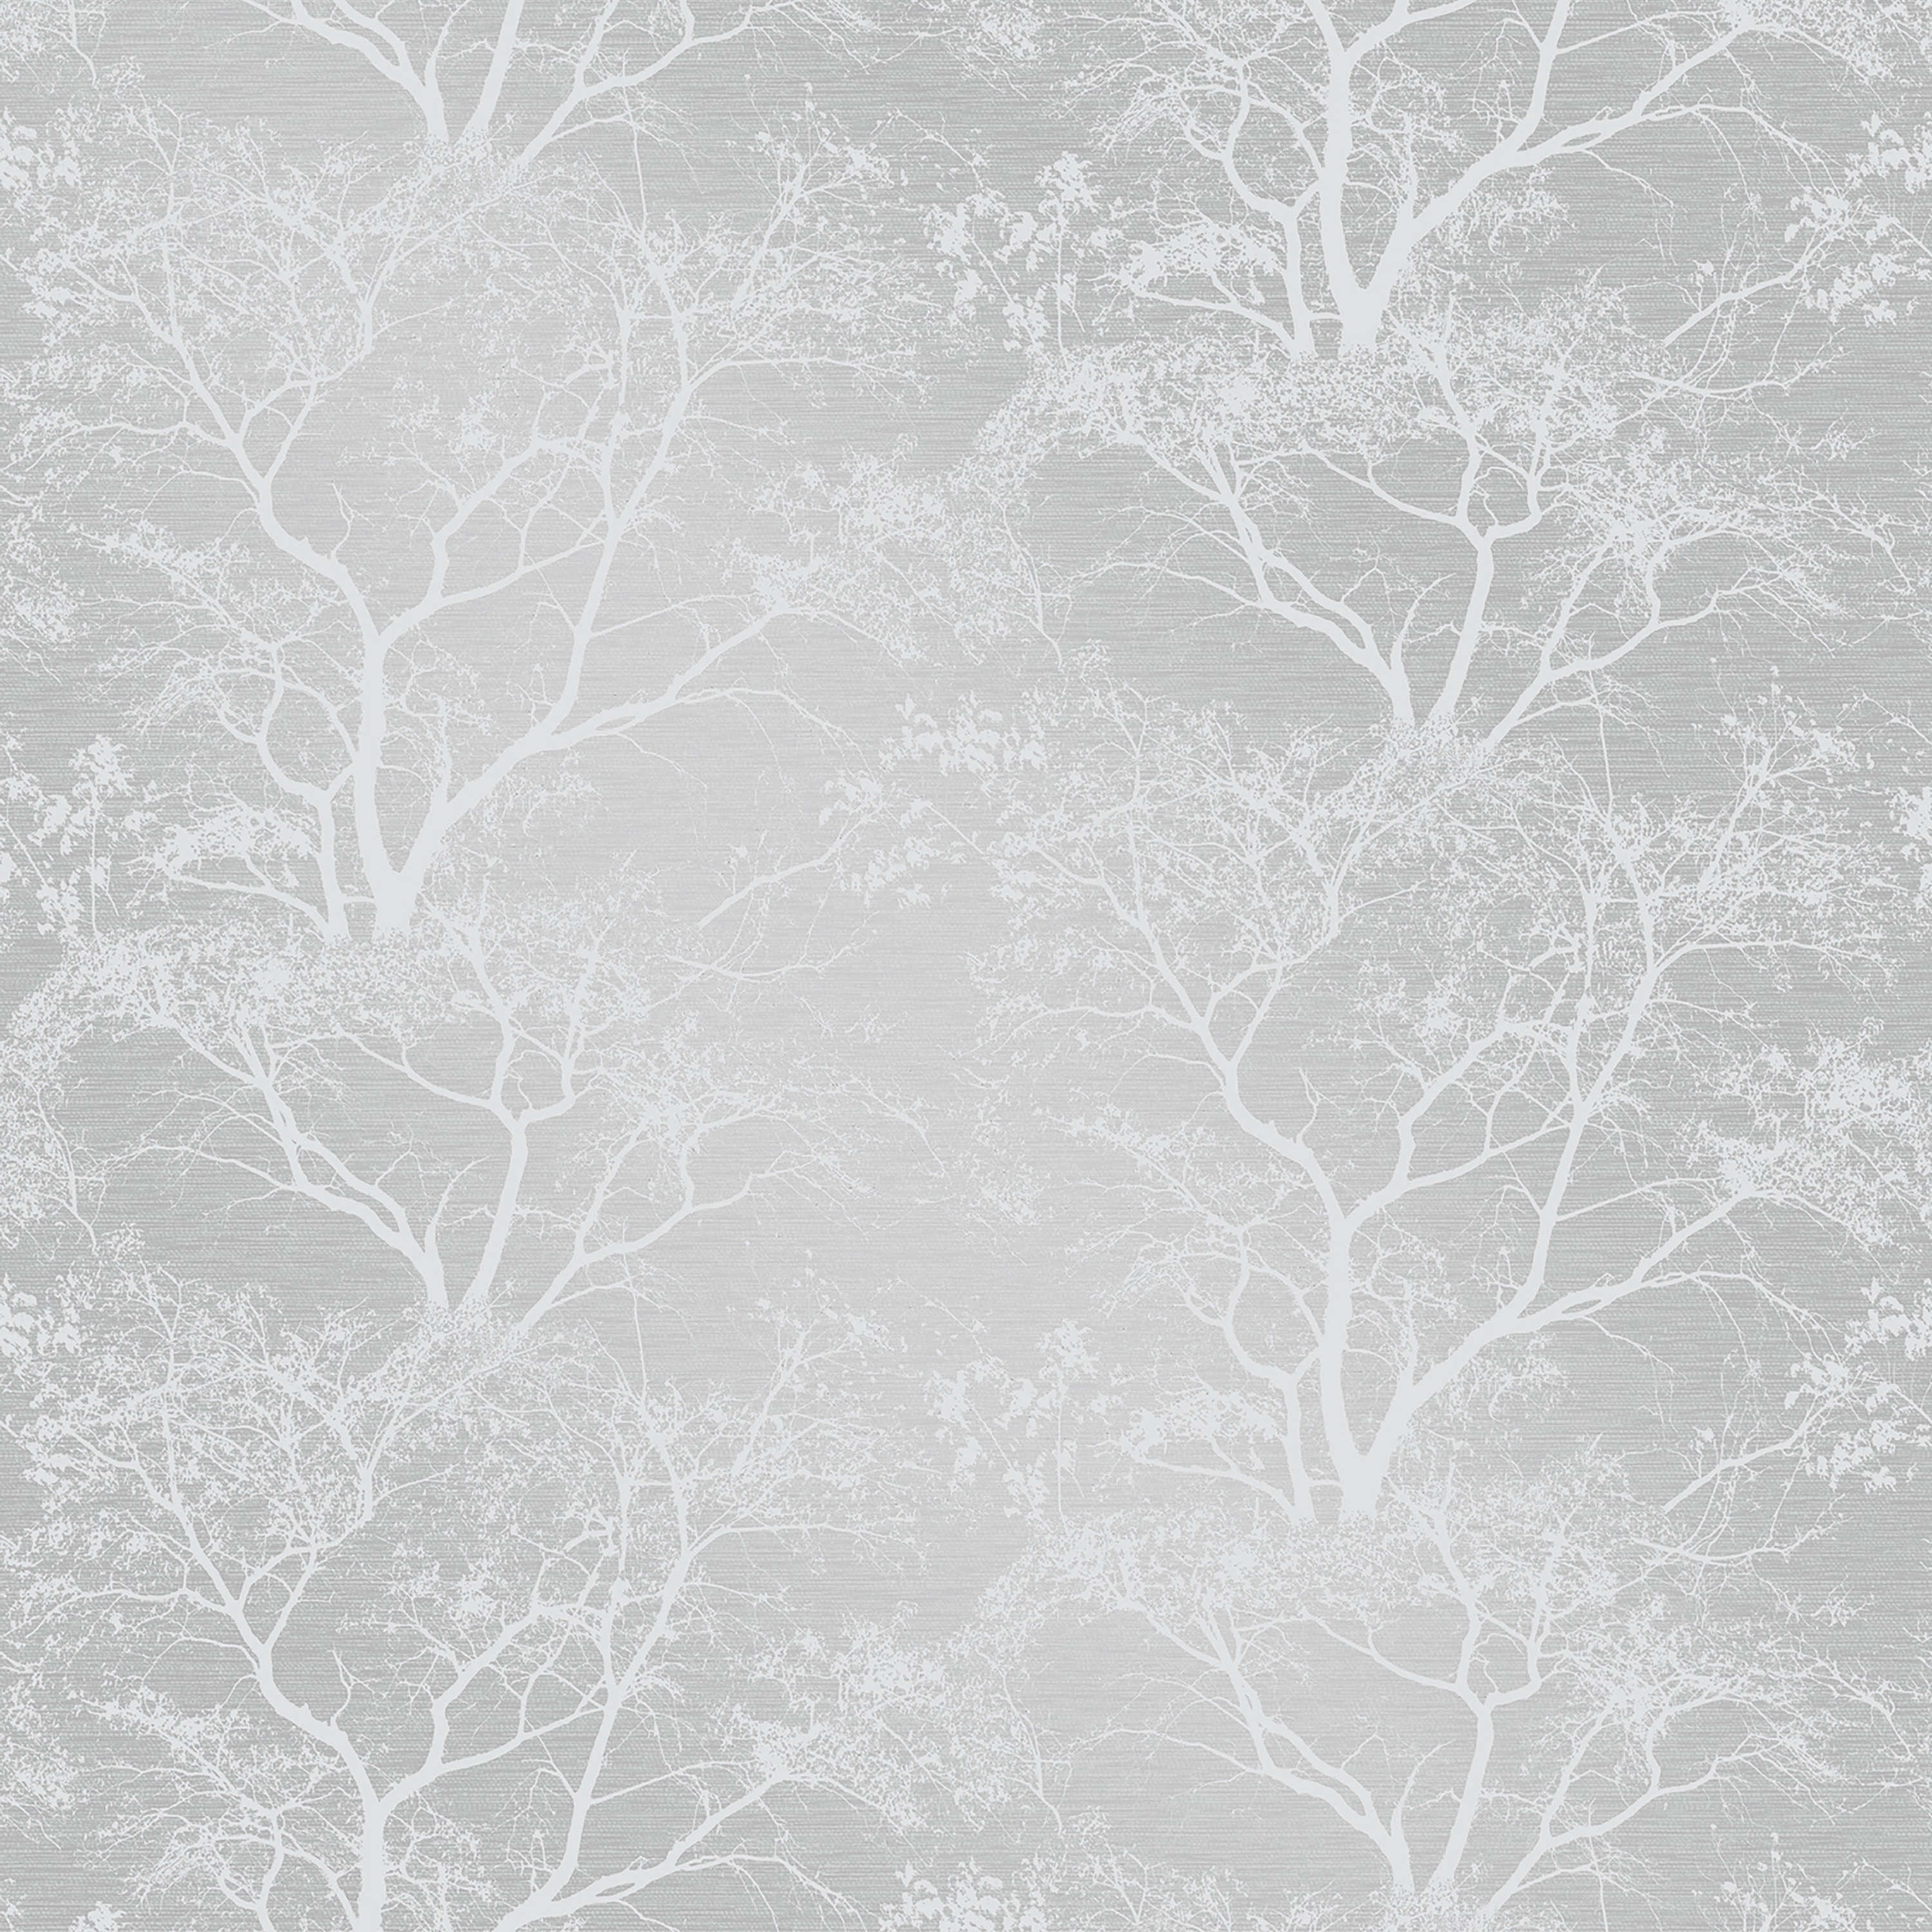 Holden Decor Whispering Trees Grey Wallpaper - 10.05m x 53cm